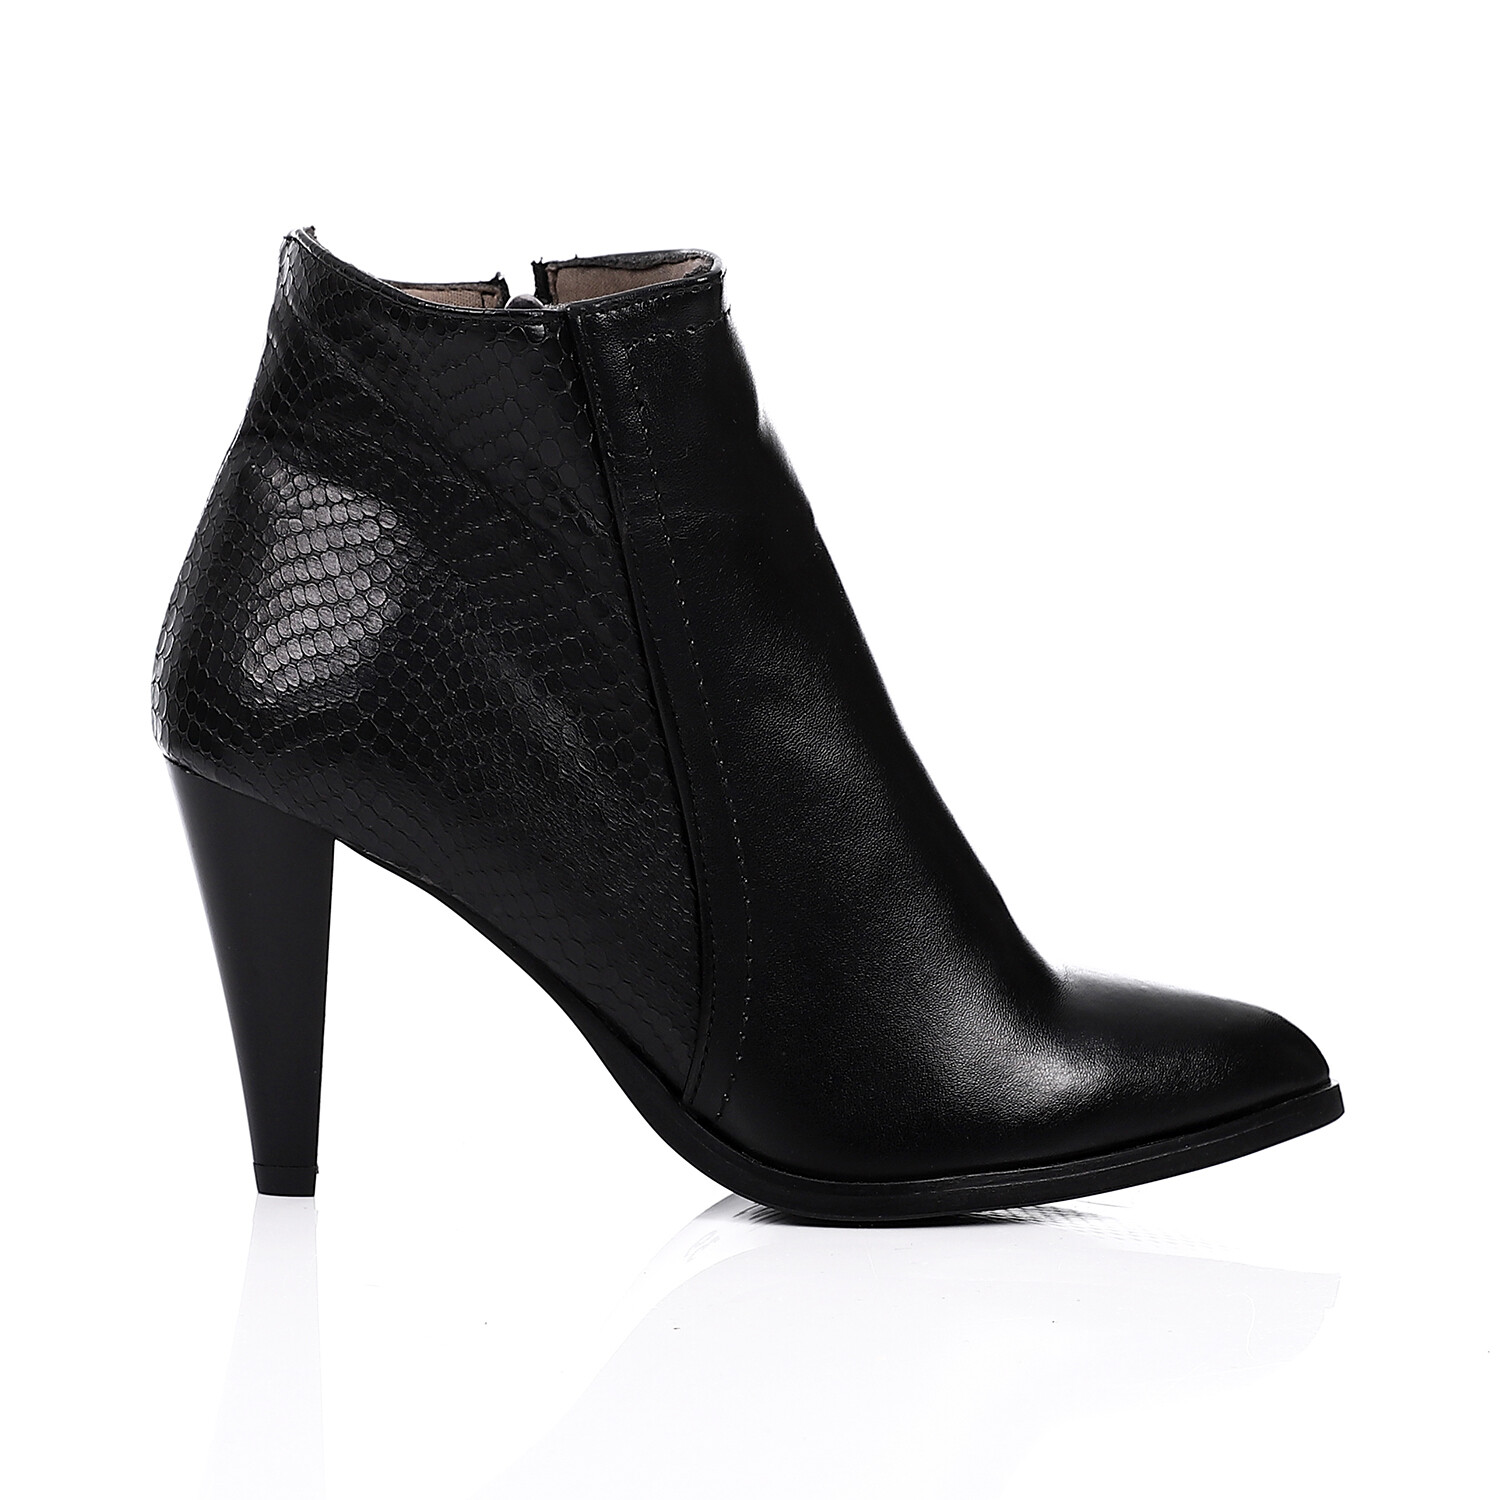 High Heels Simple Ankle Boot - Black 3838